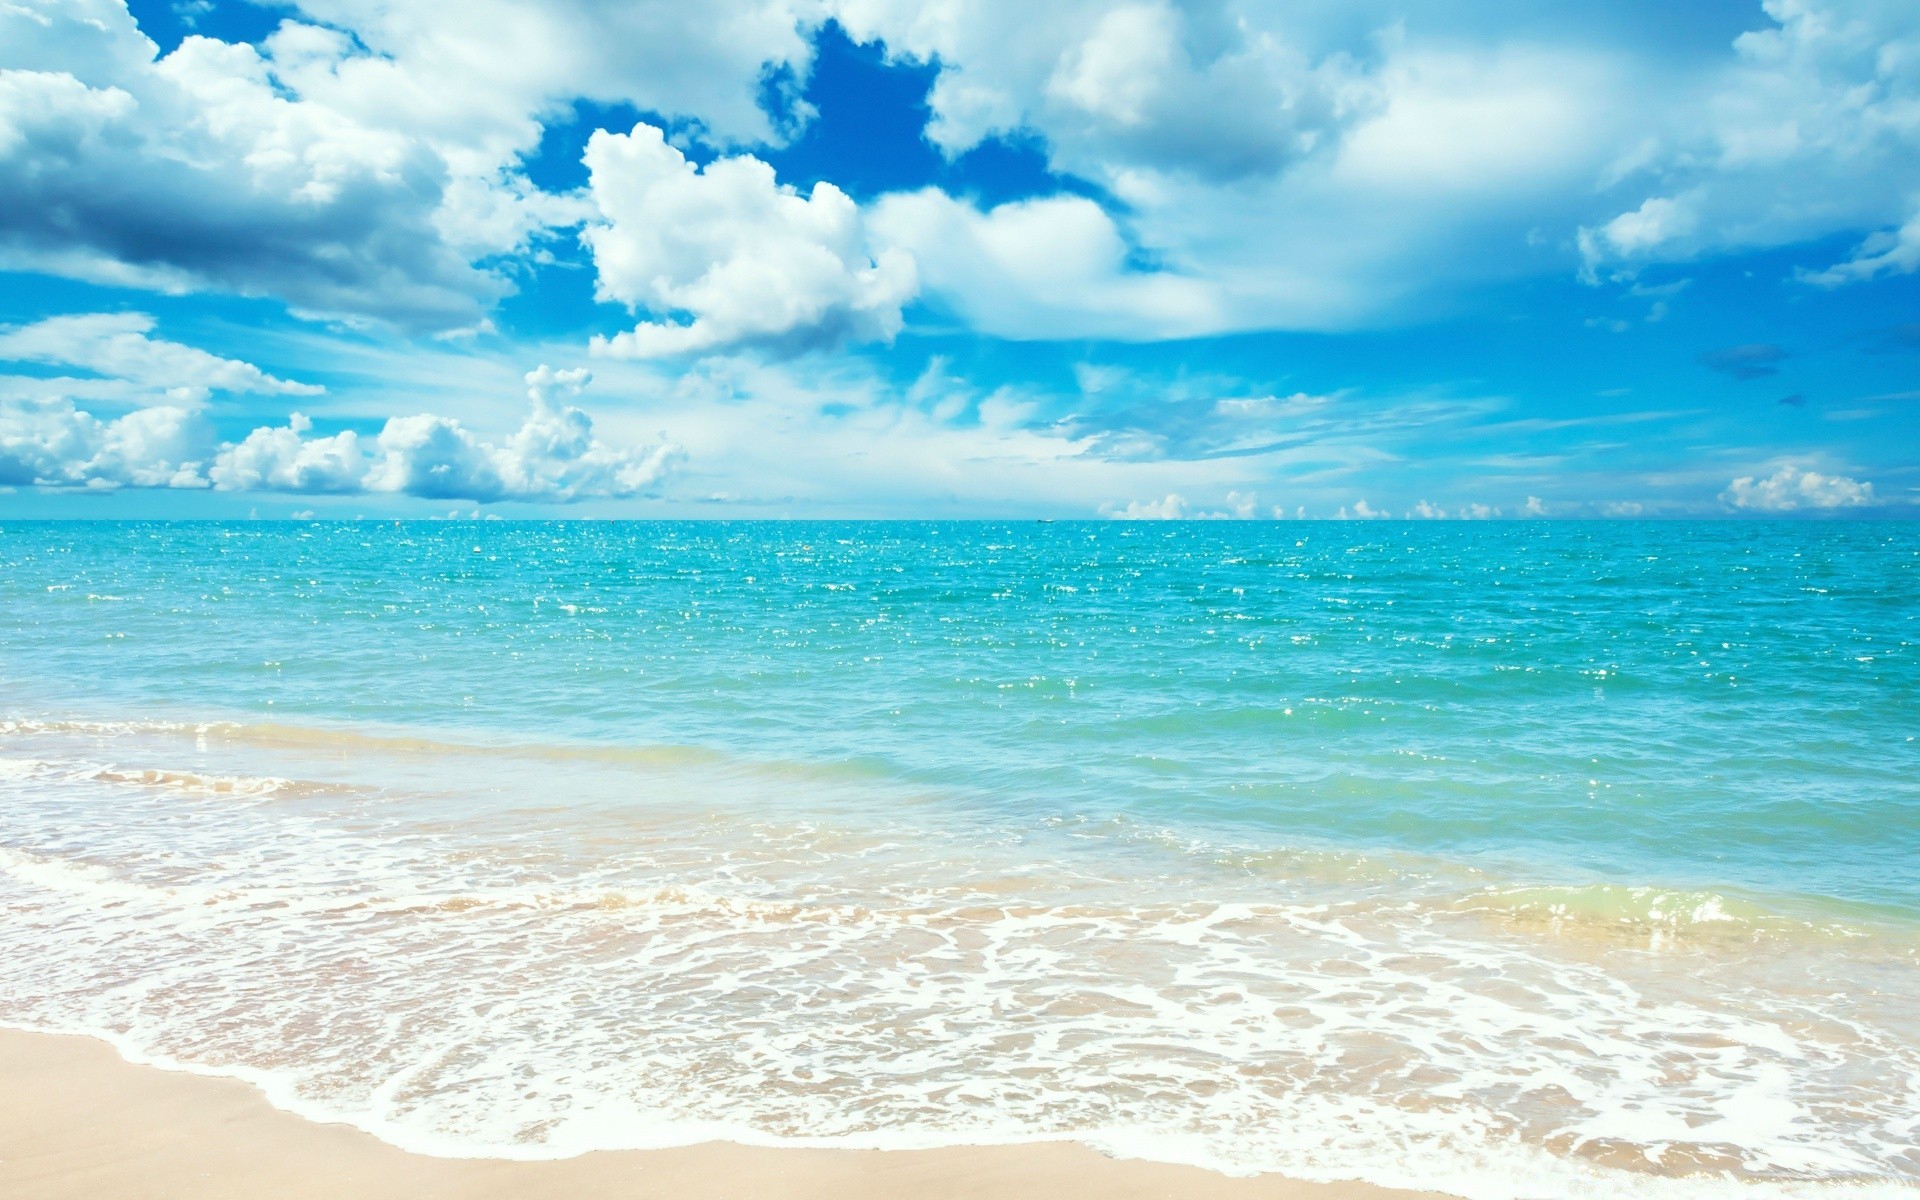 лето песок воды тропический прибой солнце пляж хорошую погоду путешествия релаксация небо природа море пейзаж океан идиллия бирюза моря волна